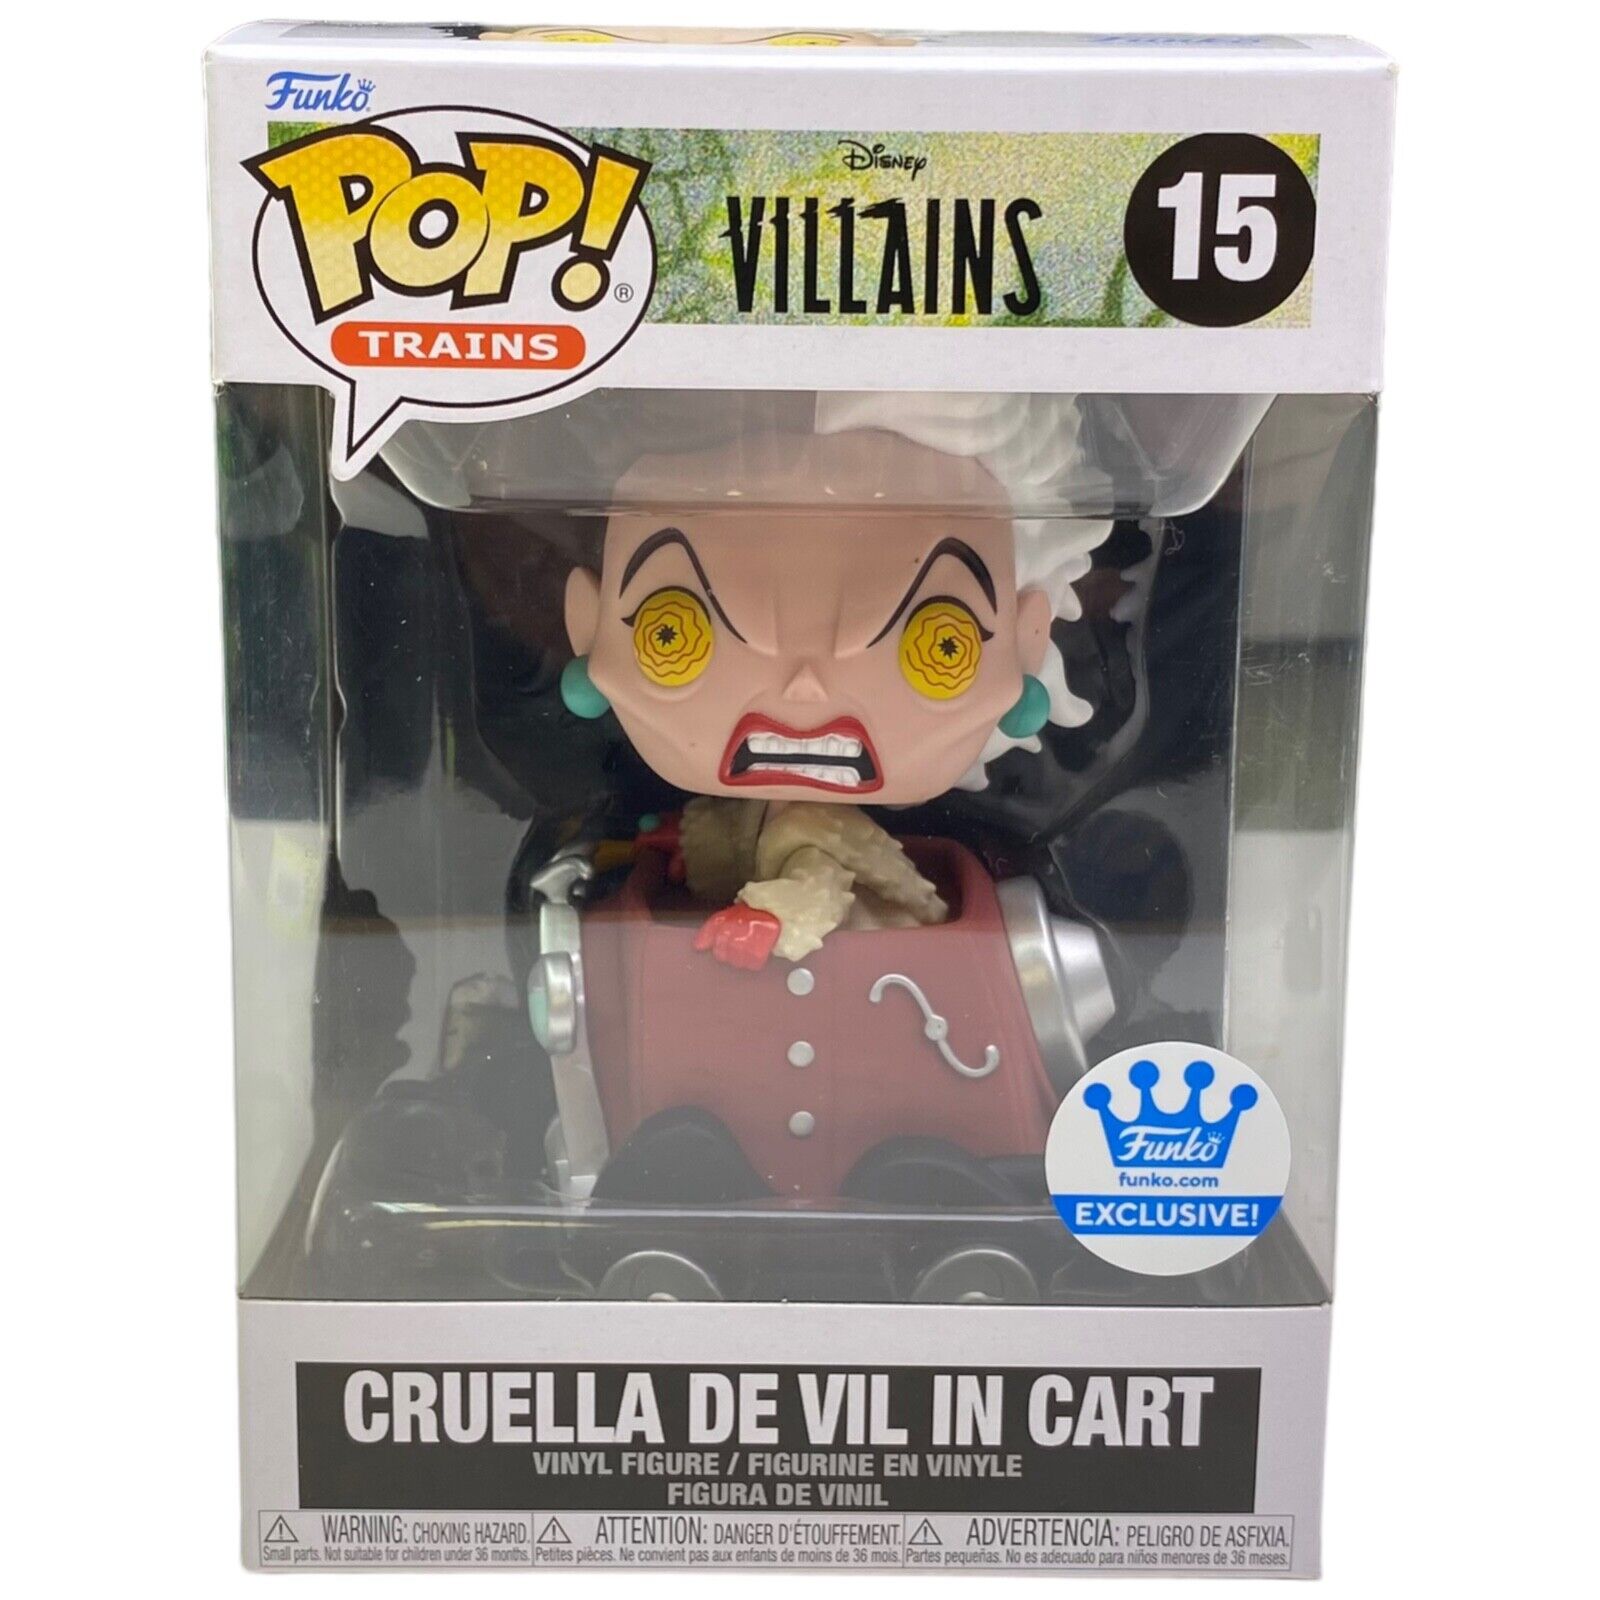 Funko Pop Cruella De Vil in Cart Vinyl Figure #15 Trains Disney Villians